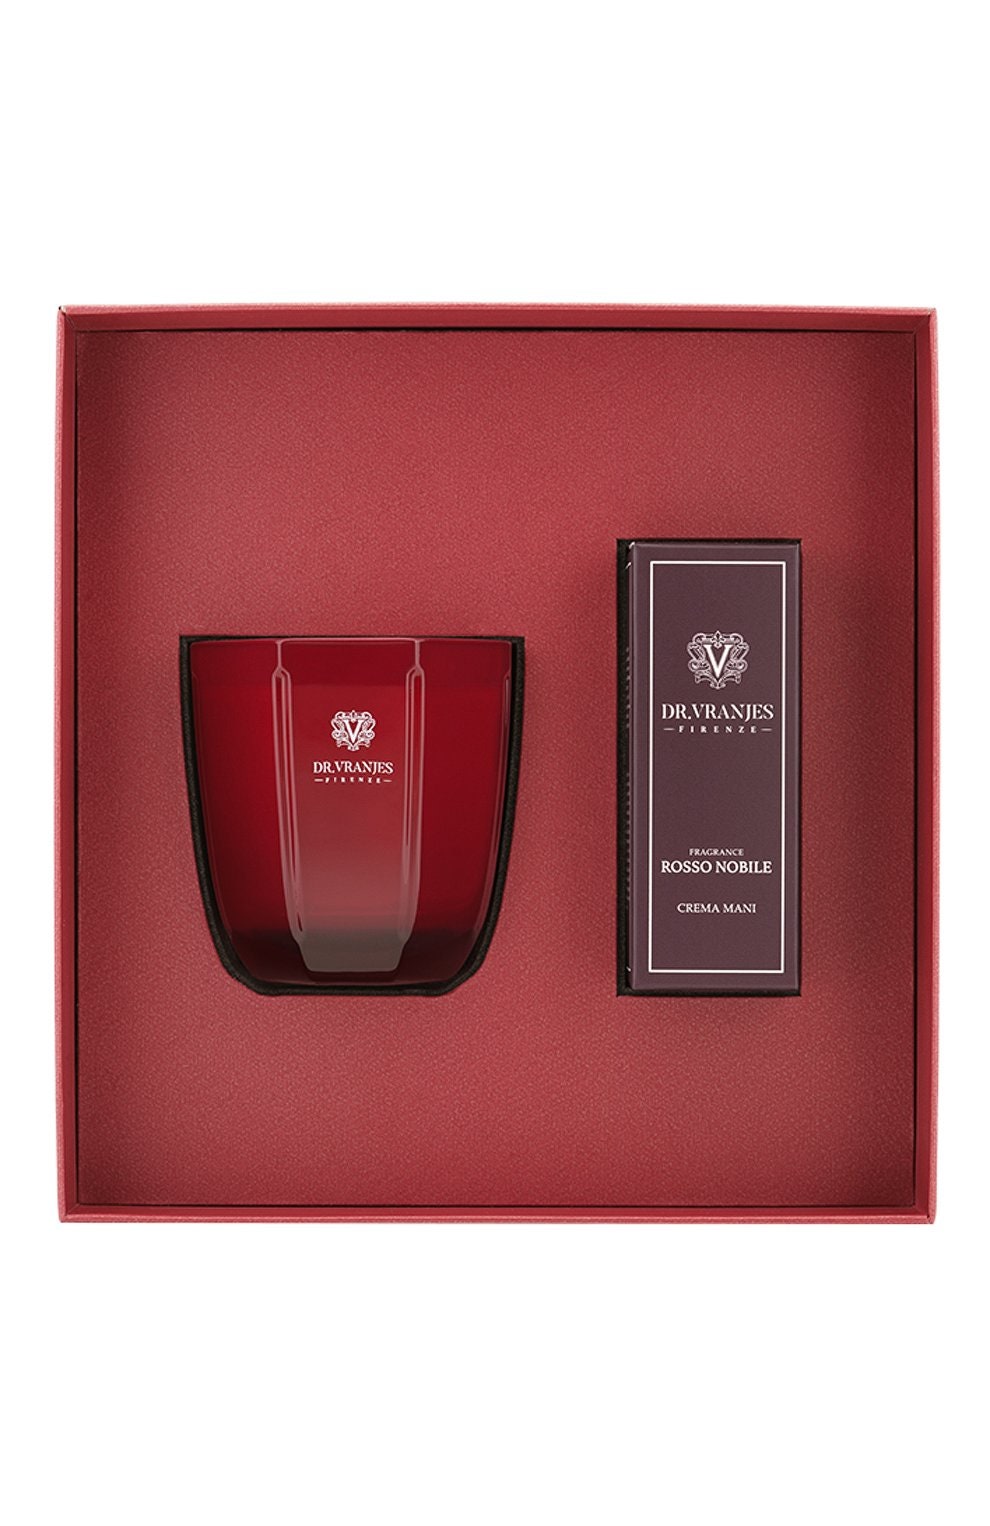 Подарочный набор — свеча и крем для рук с ароматом Rosso Nobile 10 200 руб.